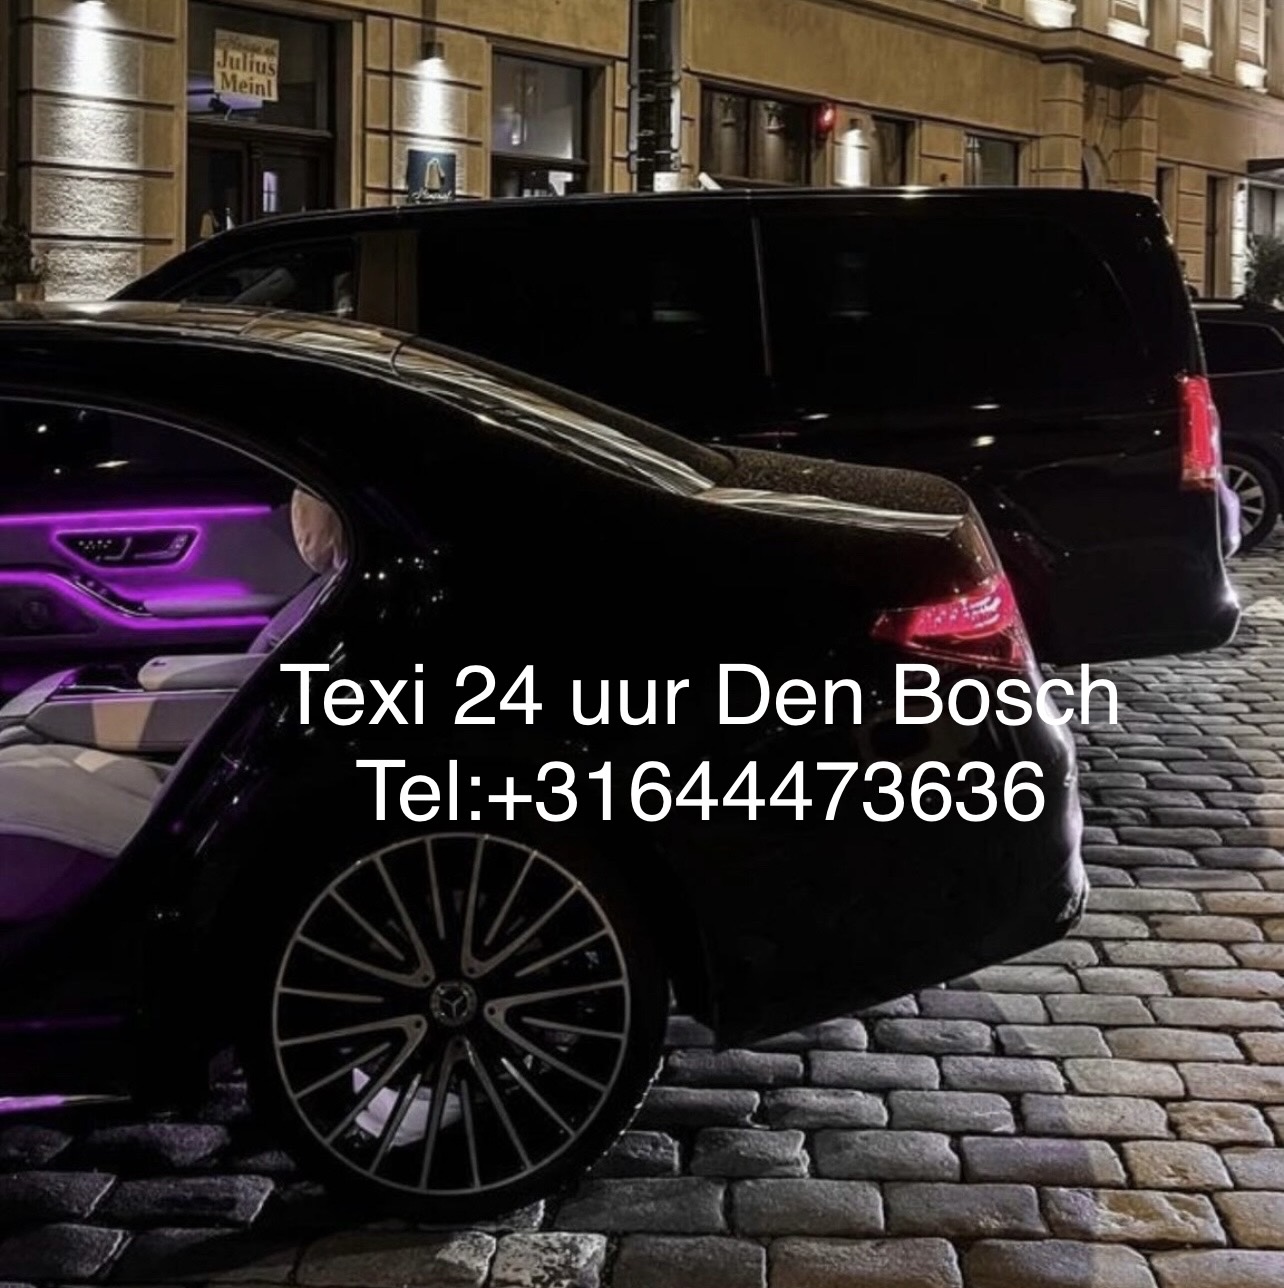 Taxi Eindhoven Airport Den Bosch 24 uur!